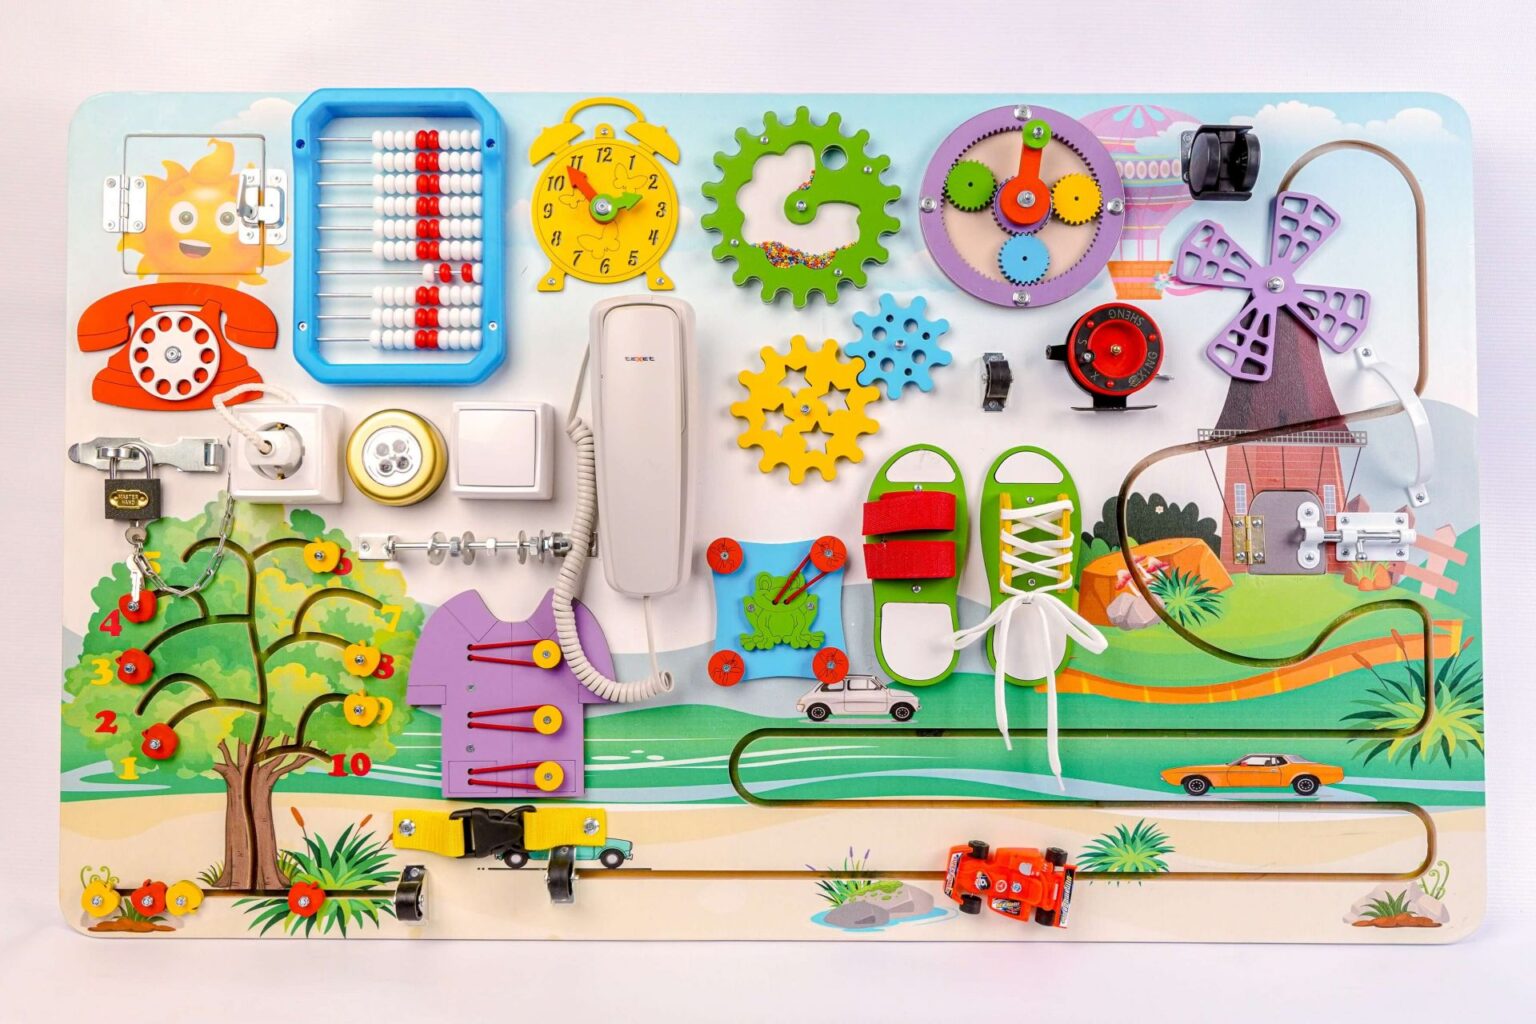 Бизиборд для ребенка: польза, компоненты, изготовление своими руками